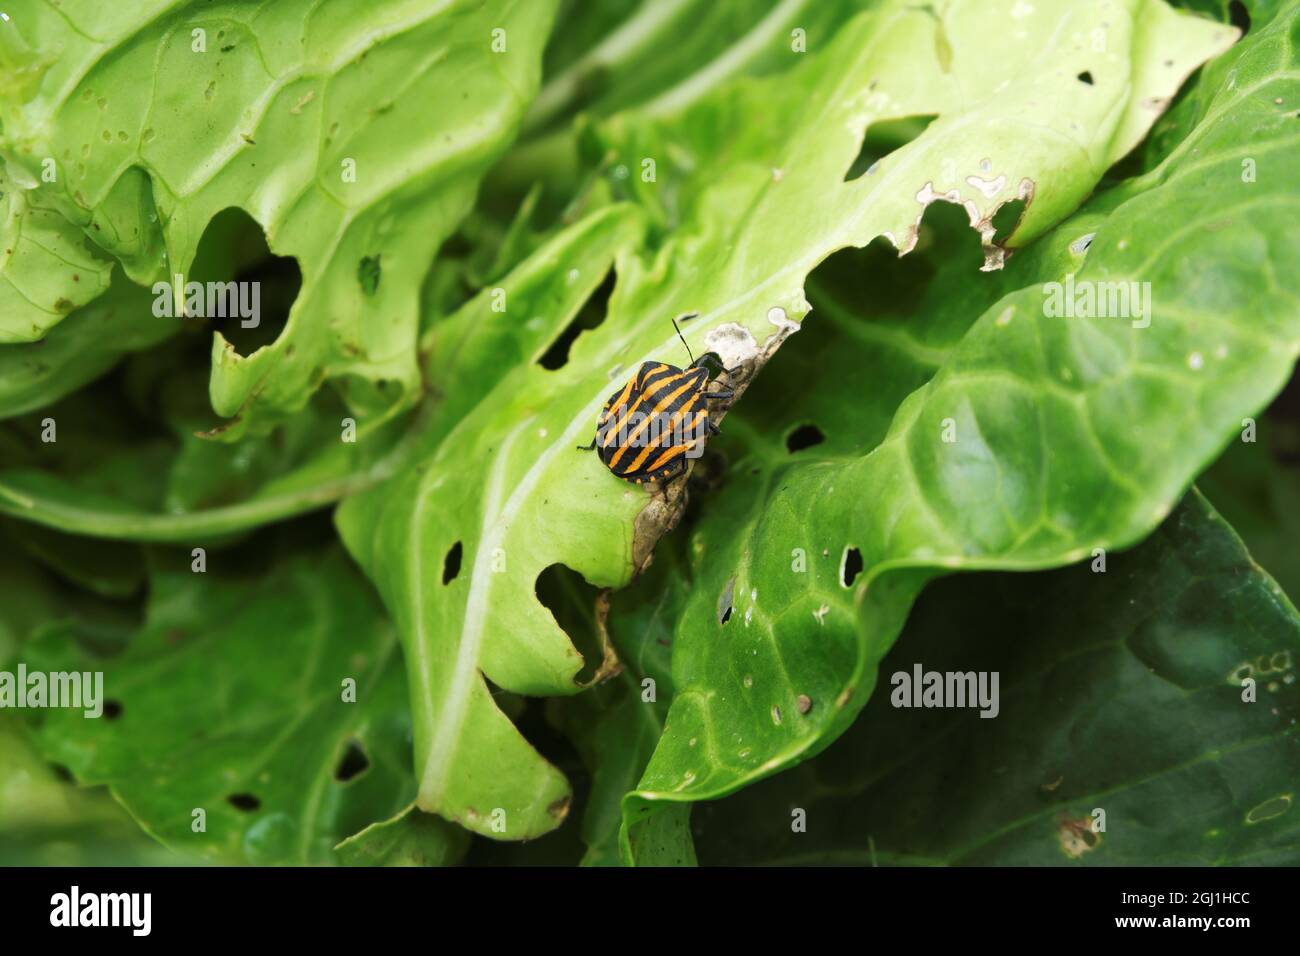 Pentatomidae. Le coléoptère est orange avec une bande noire mangeant une feuille de chou dans le jardin. Mise au point sélective. Banque D'Images